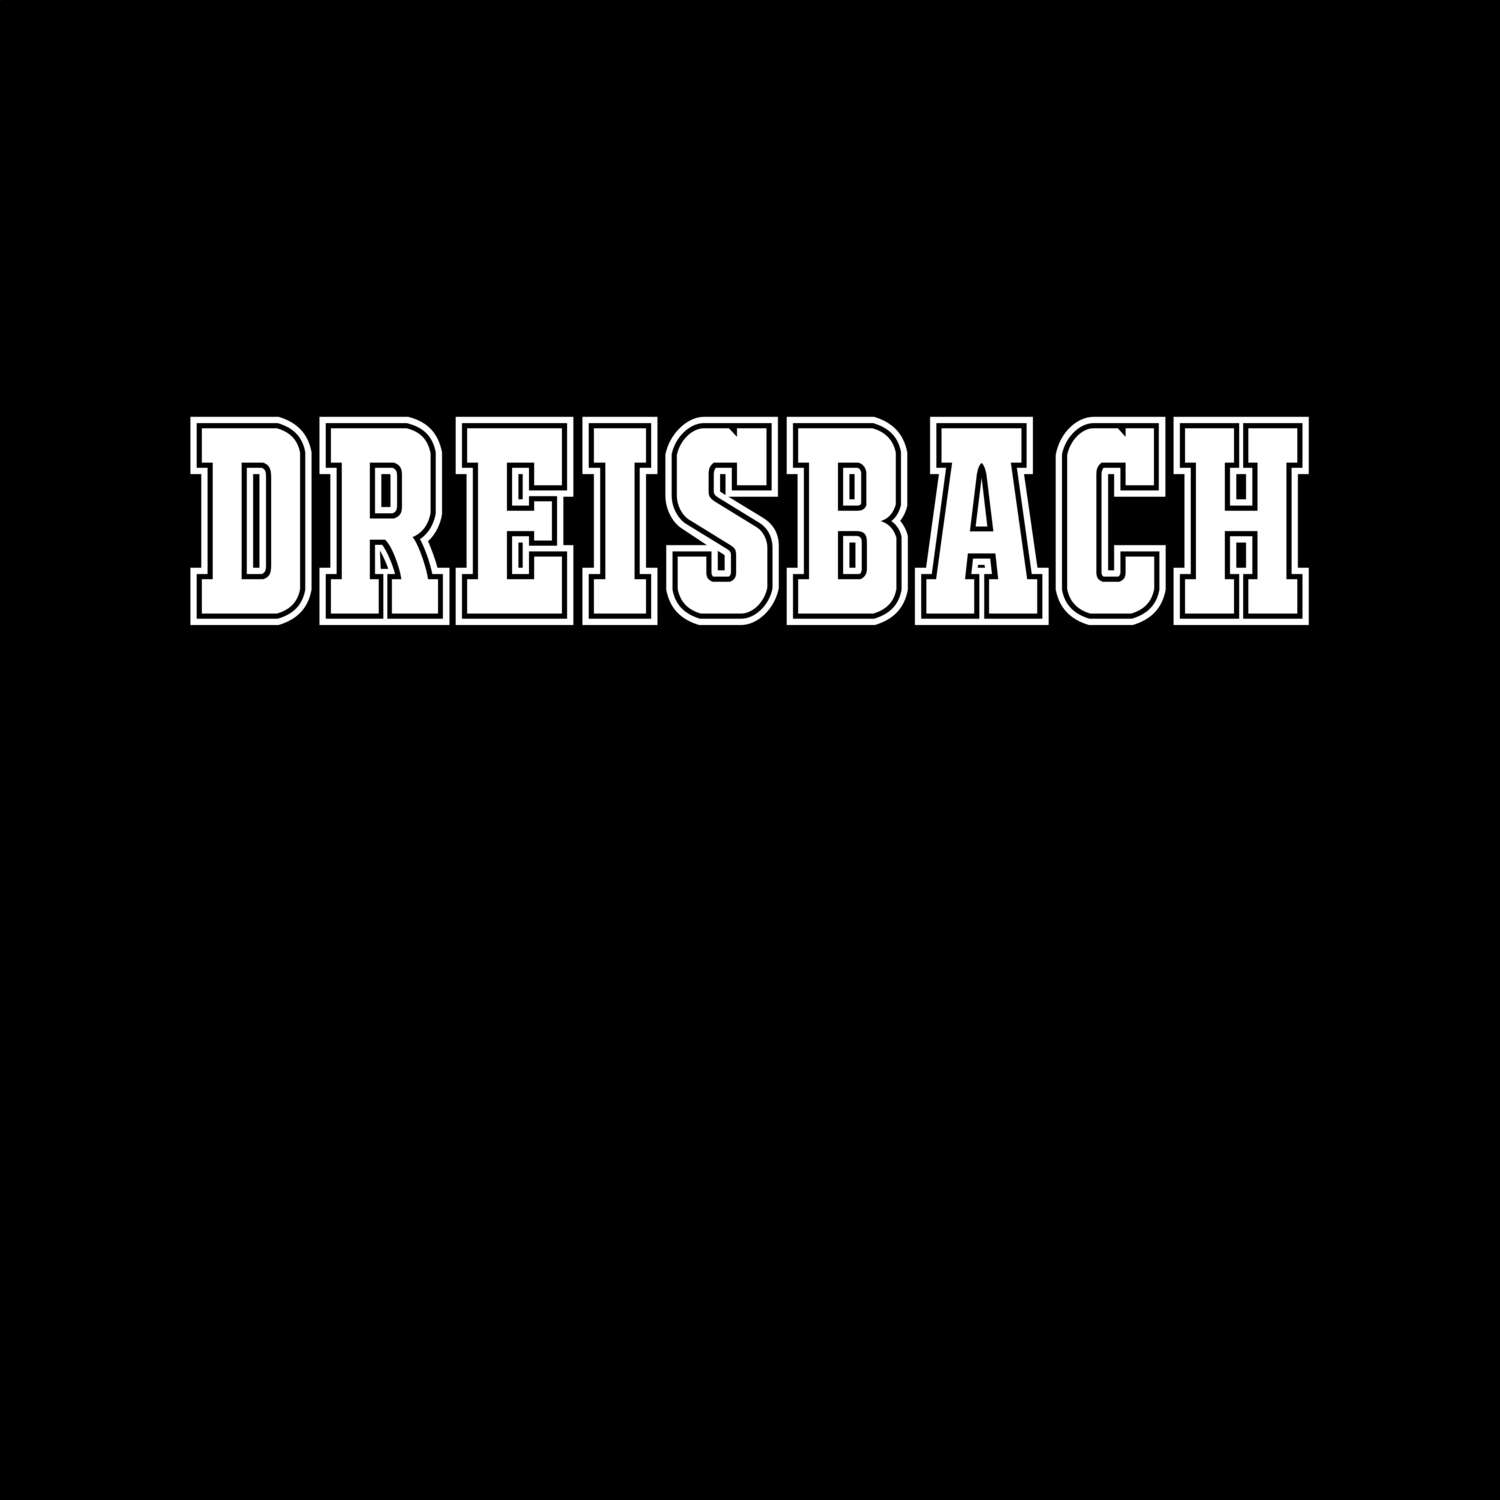 Dreisbach T-Shirt »Classic«